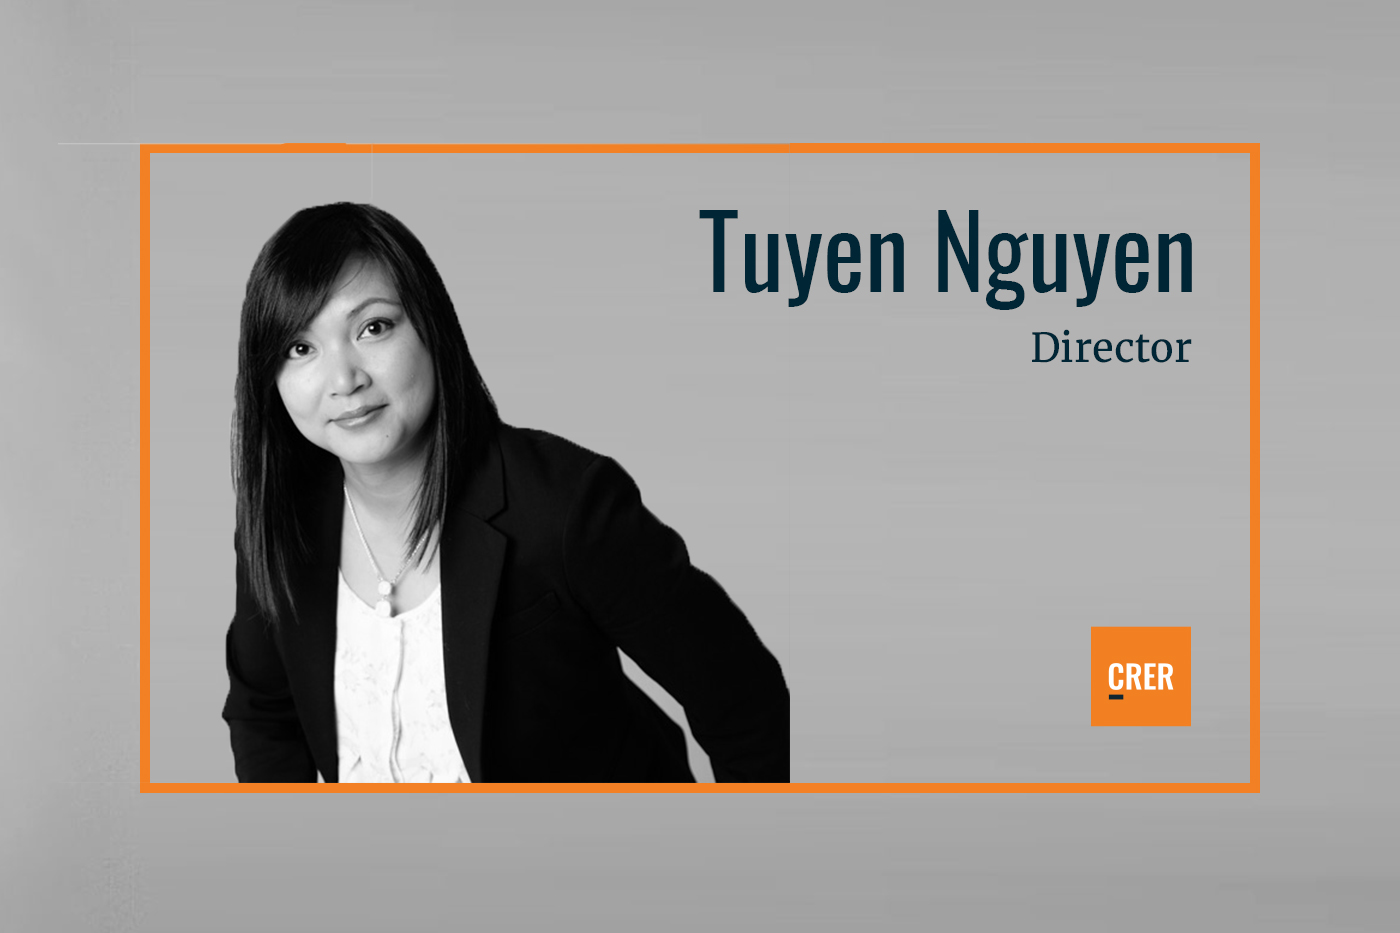 Tuyen Nguyen Joins CRER